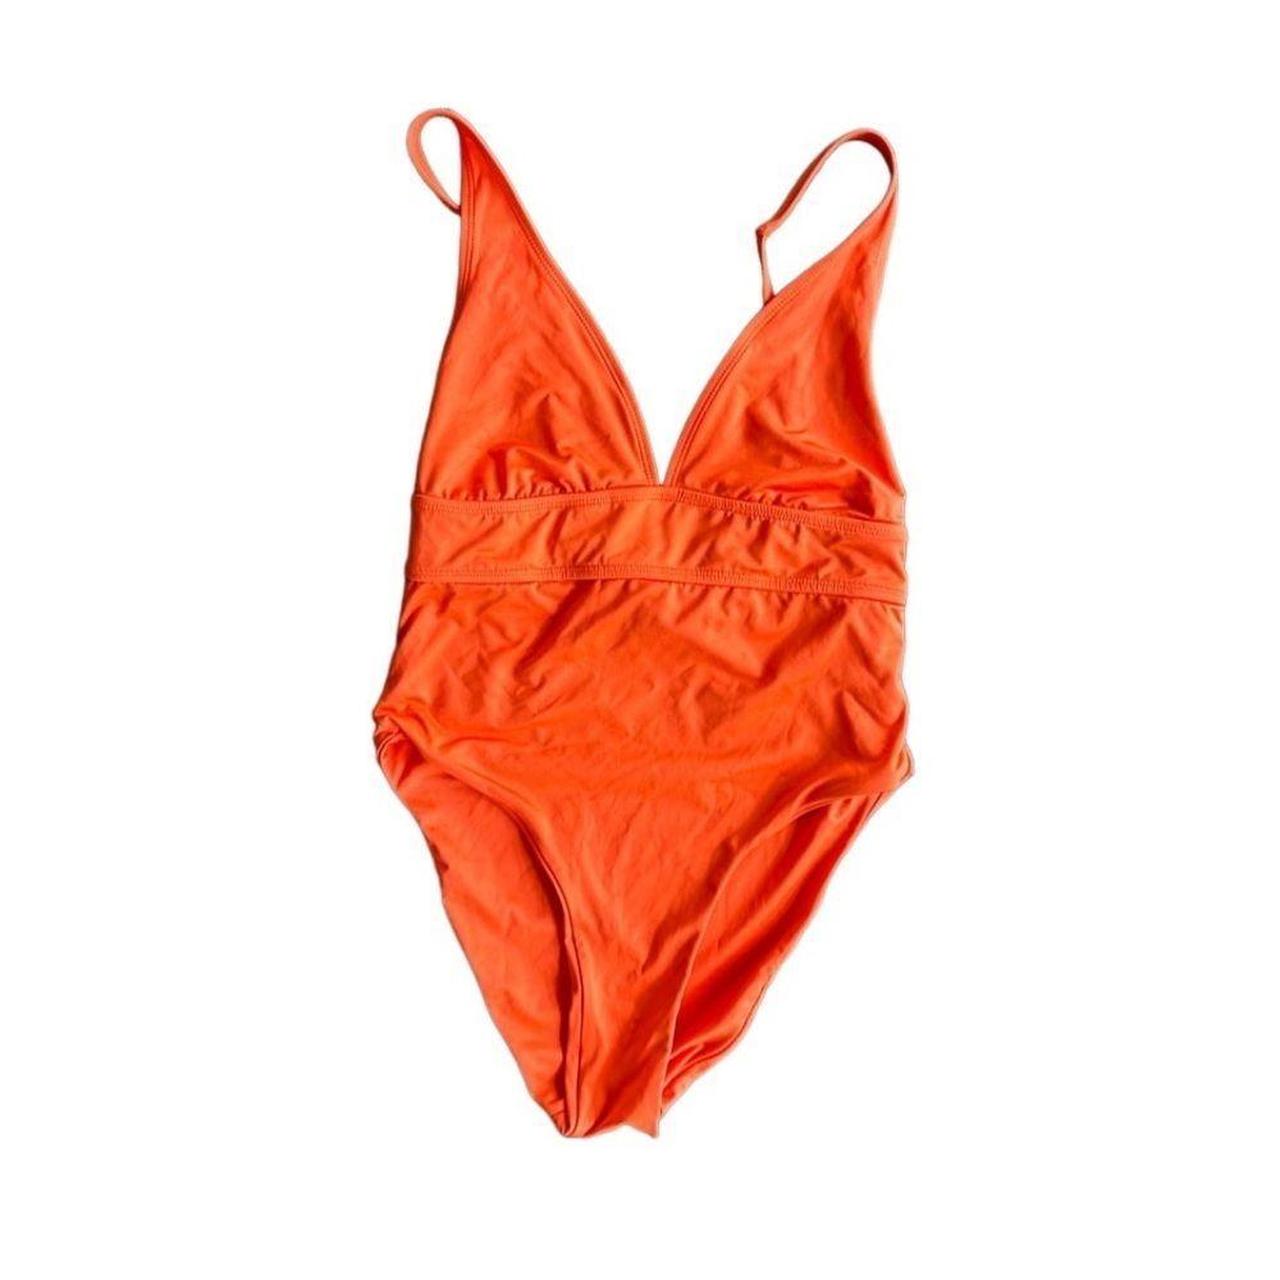 Monday Swimwear Orange One Piece Swimsuit in size... - Depop